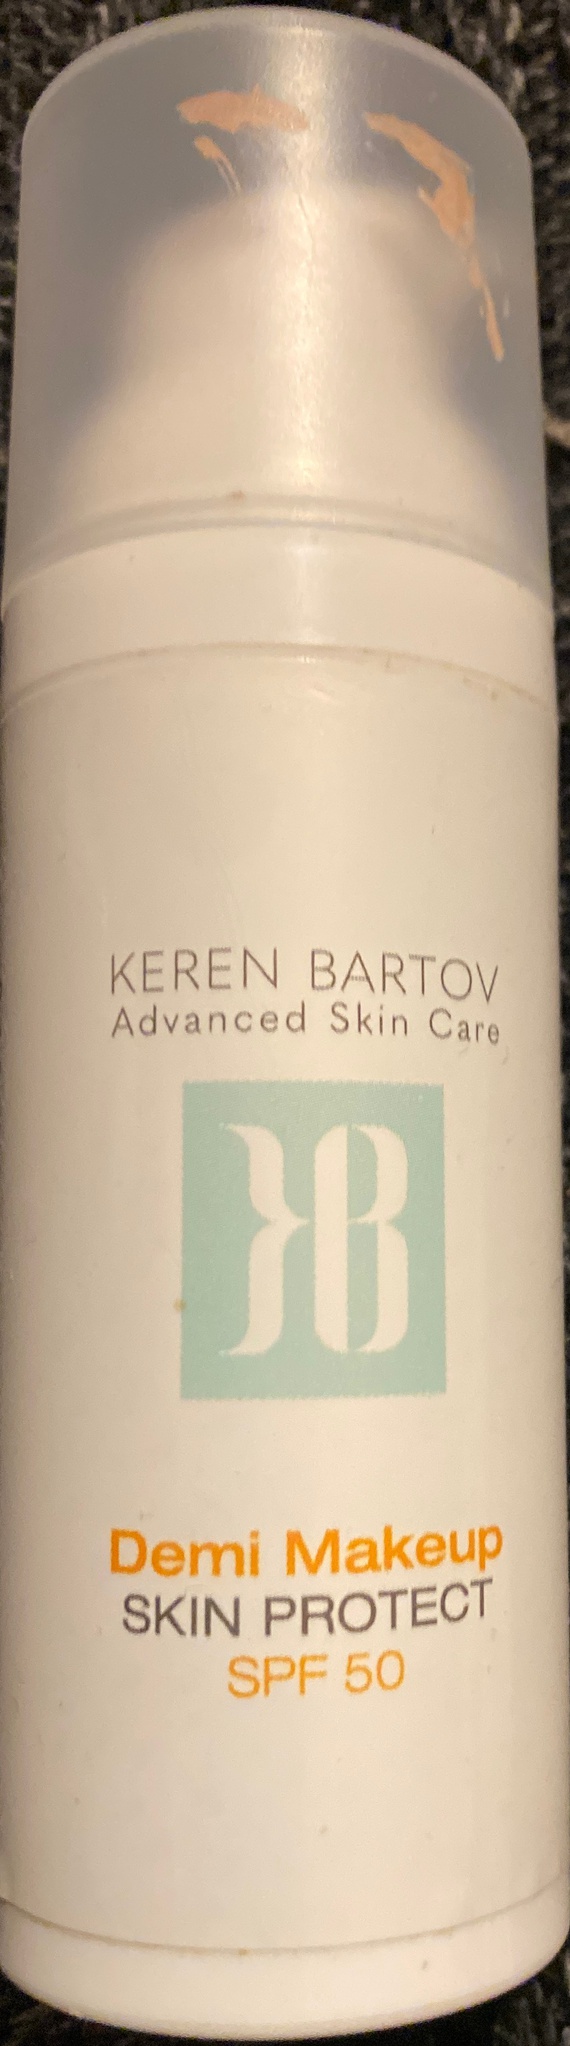 KEREN BARTOV Demi Makeup Skin Protect